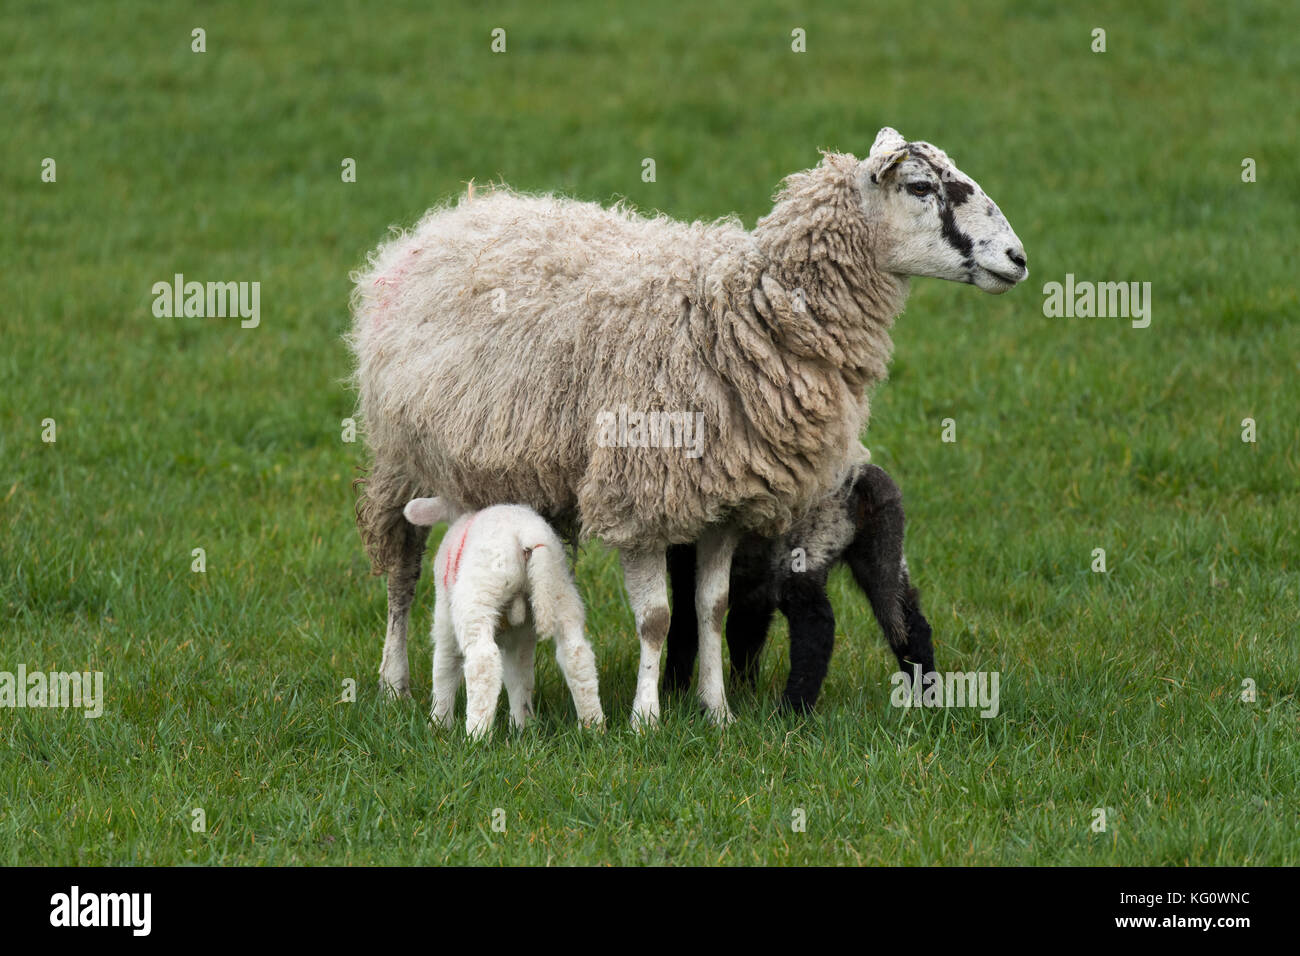 Gros plan sur 1 mouton (brebis) et 2 petites agneaux debout sur l'herbe dans le champ agricole au printemps (jeunes nourrissant et mère affamant à l'appareil photo) - Angleterre, GB, Royaume-Uni. Banque D'Images